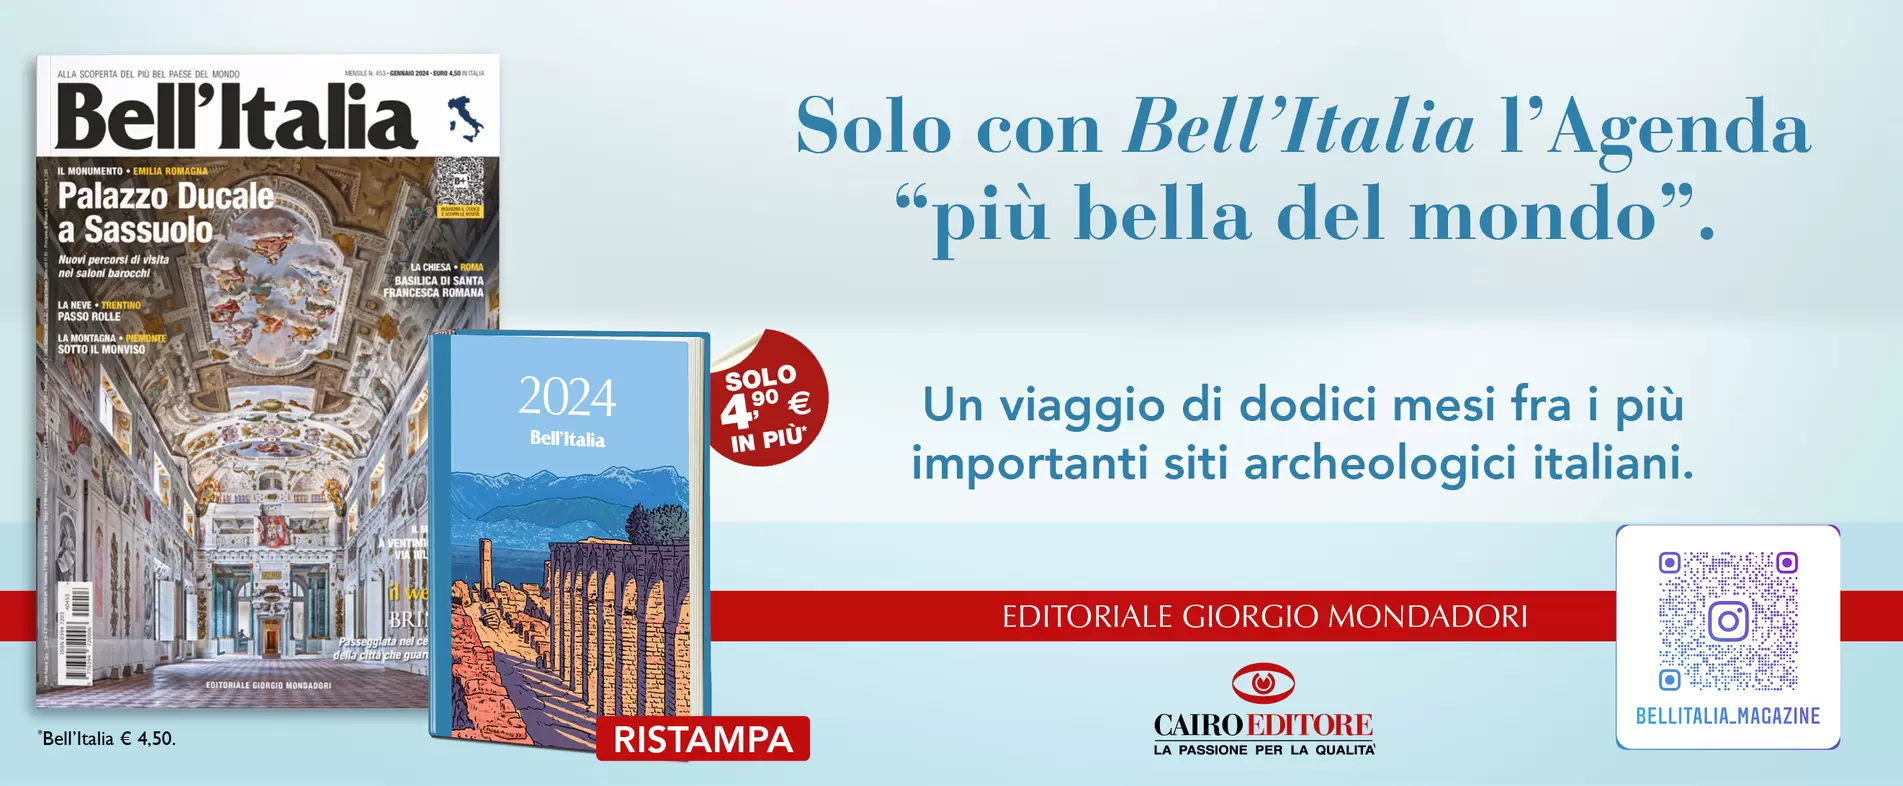 Solo con Bell’Italia l’Agenda “più bella del mondo”.